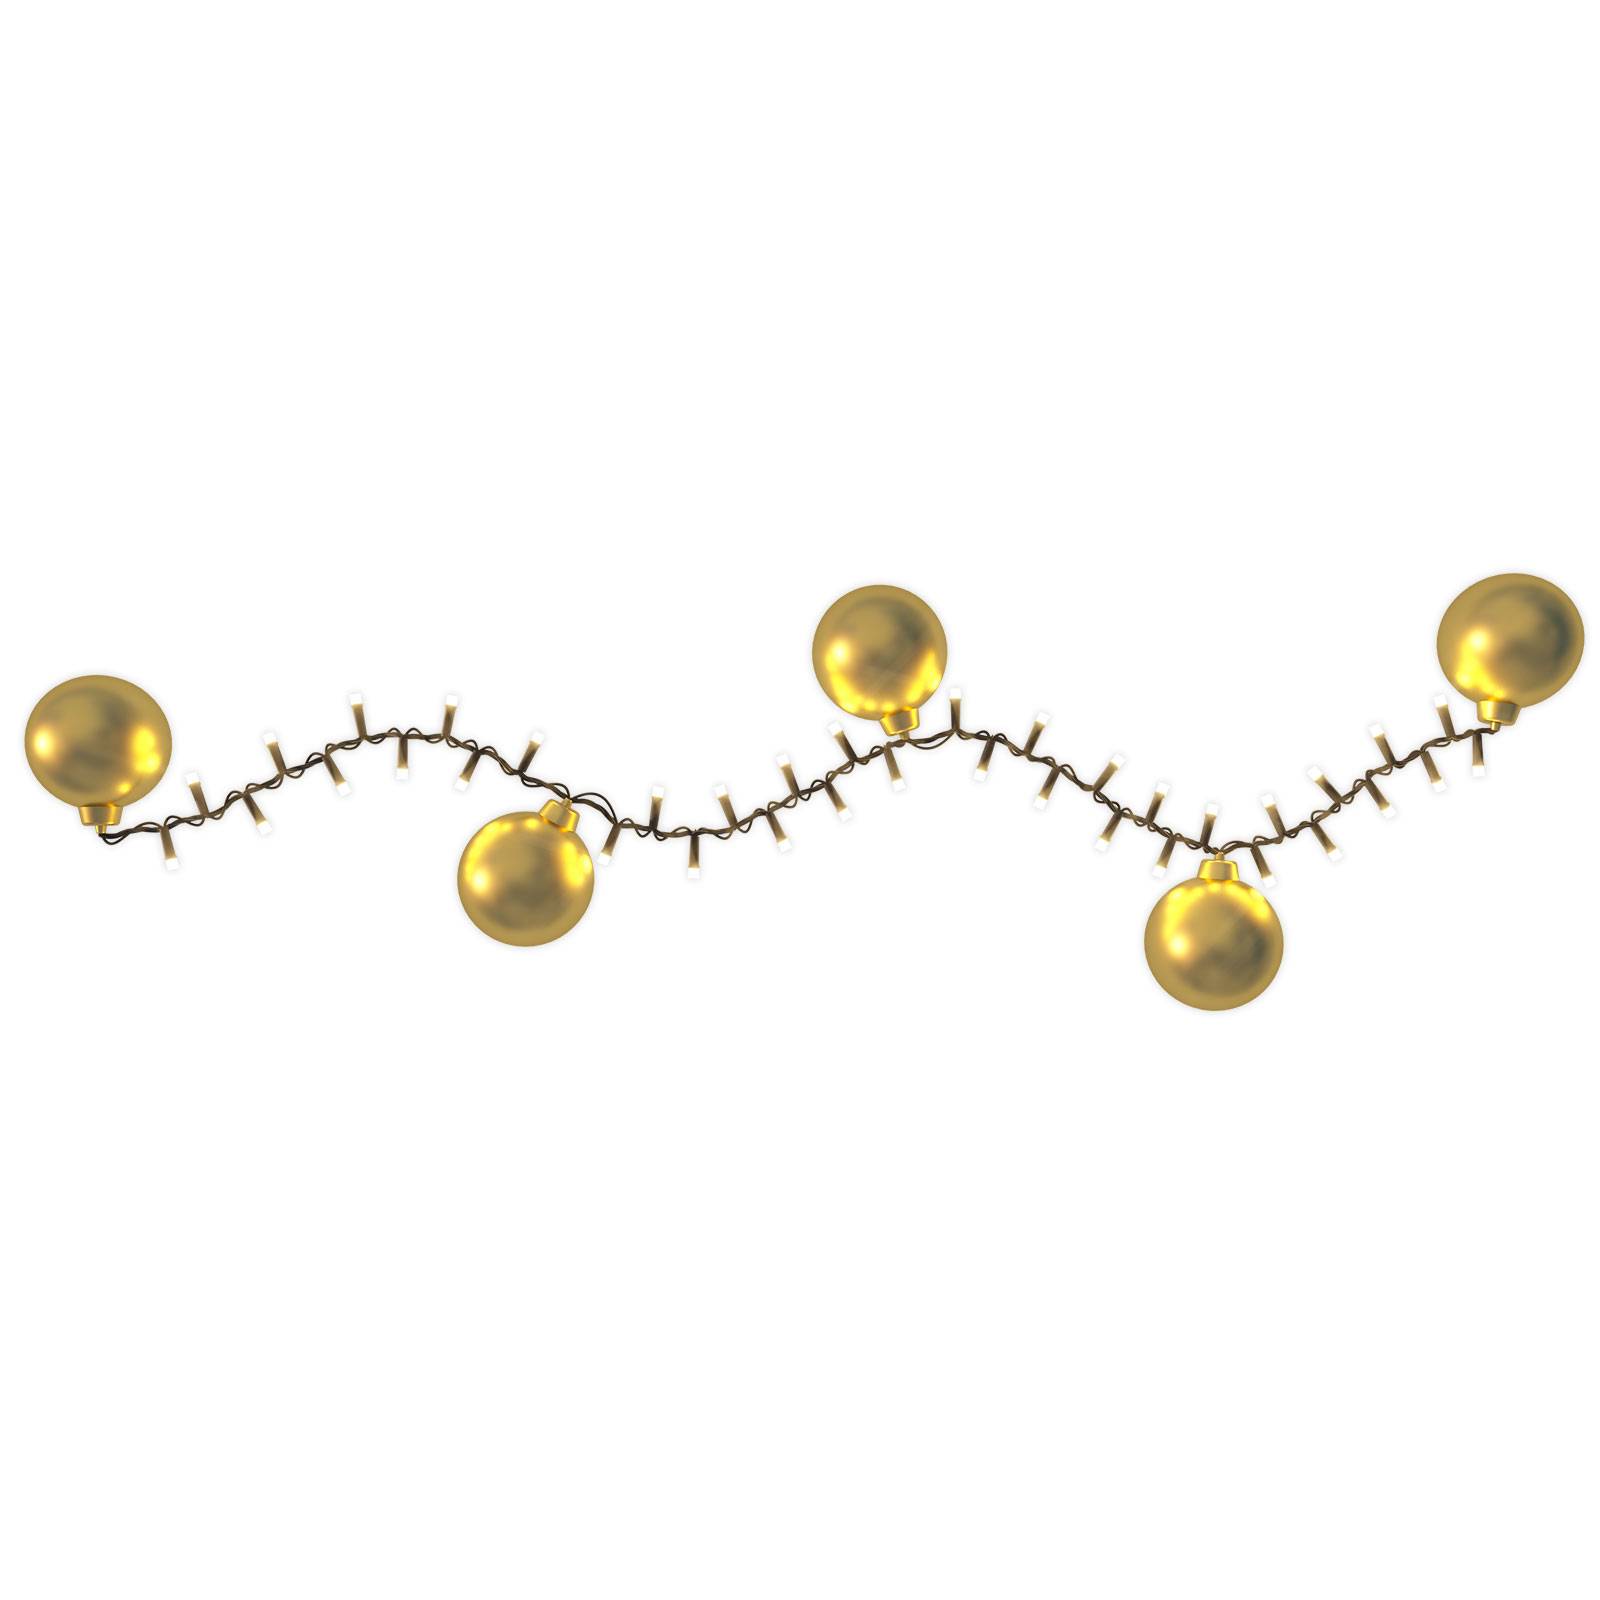 Hemsson LED-Lichterkette 2in1, Champagne gold, 700 LEDs